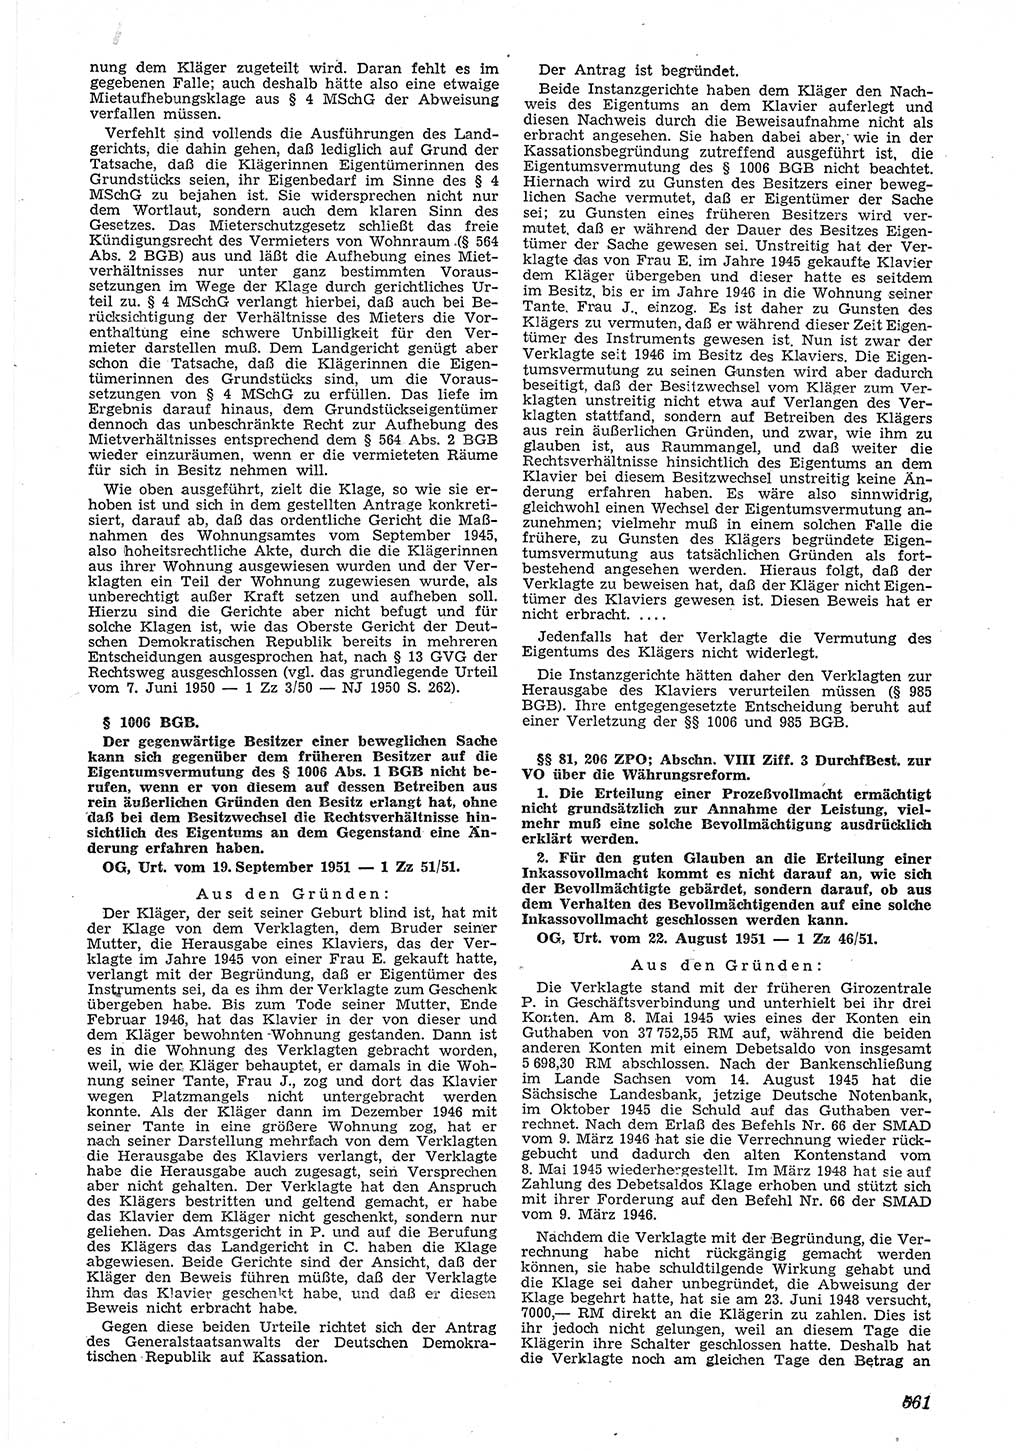 Neue Justiz (NJ), Zeitschrift für Recht und Rechtswissenschaft [Deutsche Demokratische Republik (DDR)], 5. Jahrgang 1951, Seite 561 (NJ DDR 1951, S. 561)